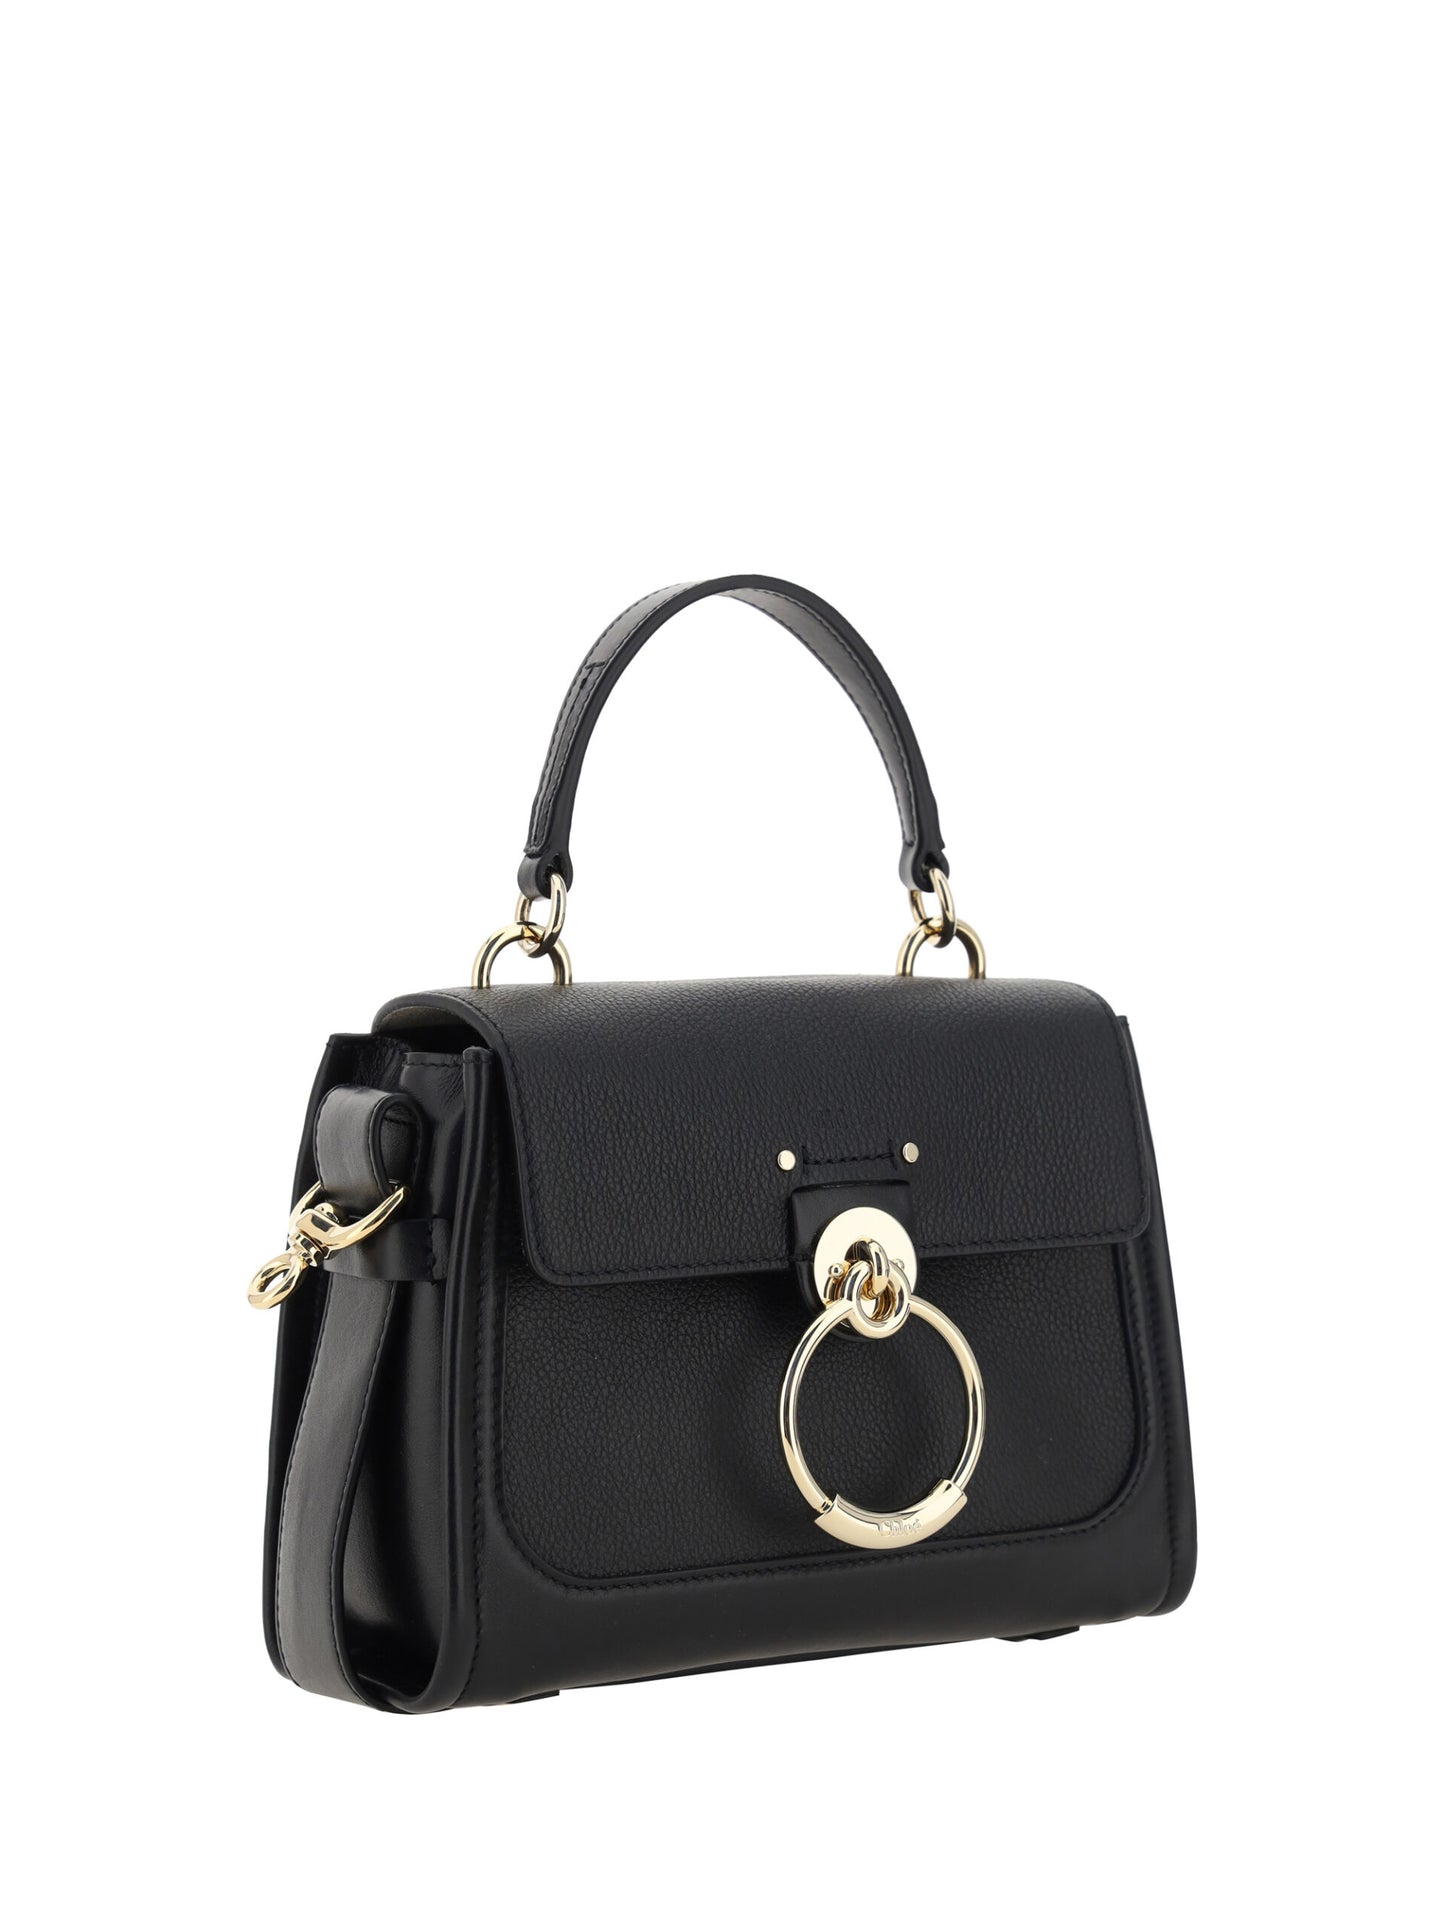 Elegant Tess Calfskin Handbag in Timeless Black